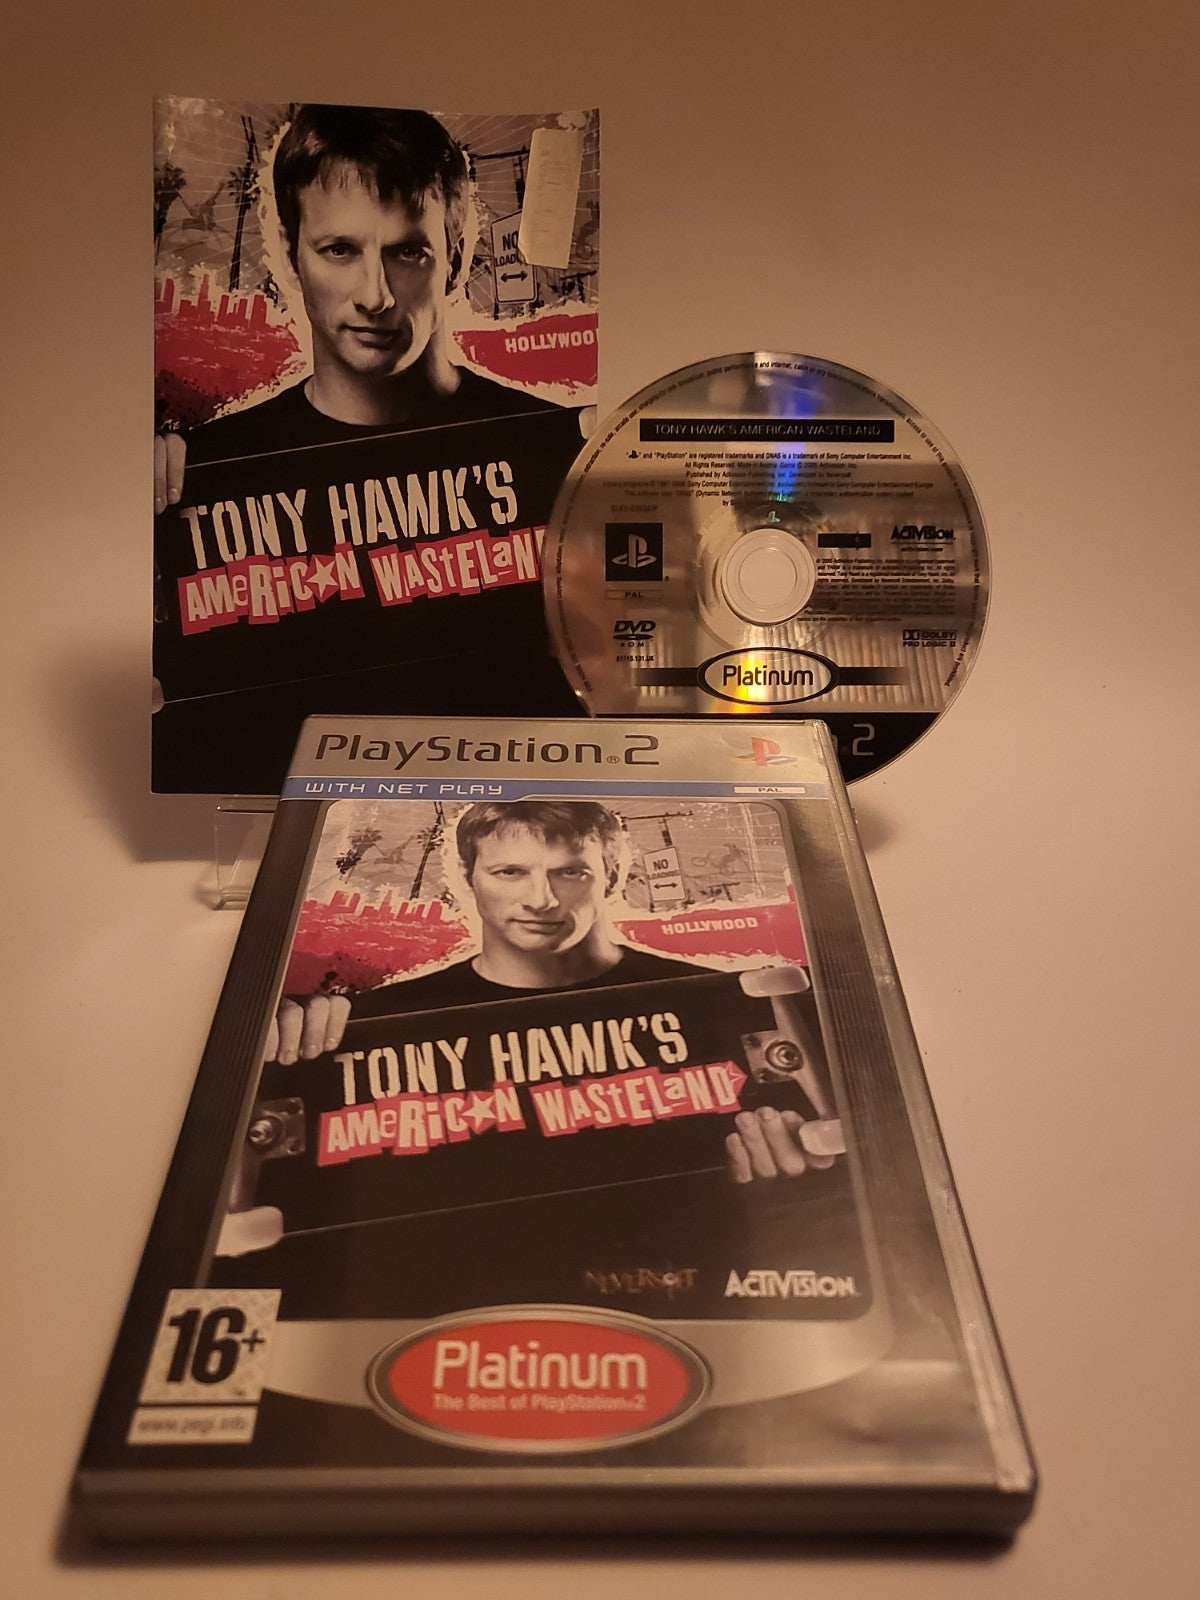 Tony Hawk's American Wasteland Platinum Edition Playstation 2